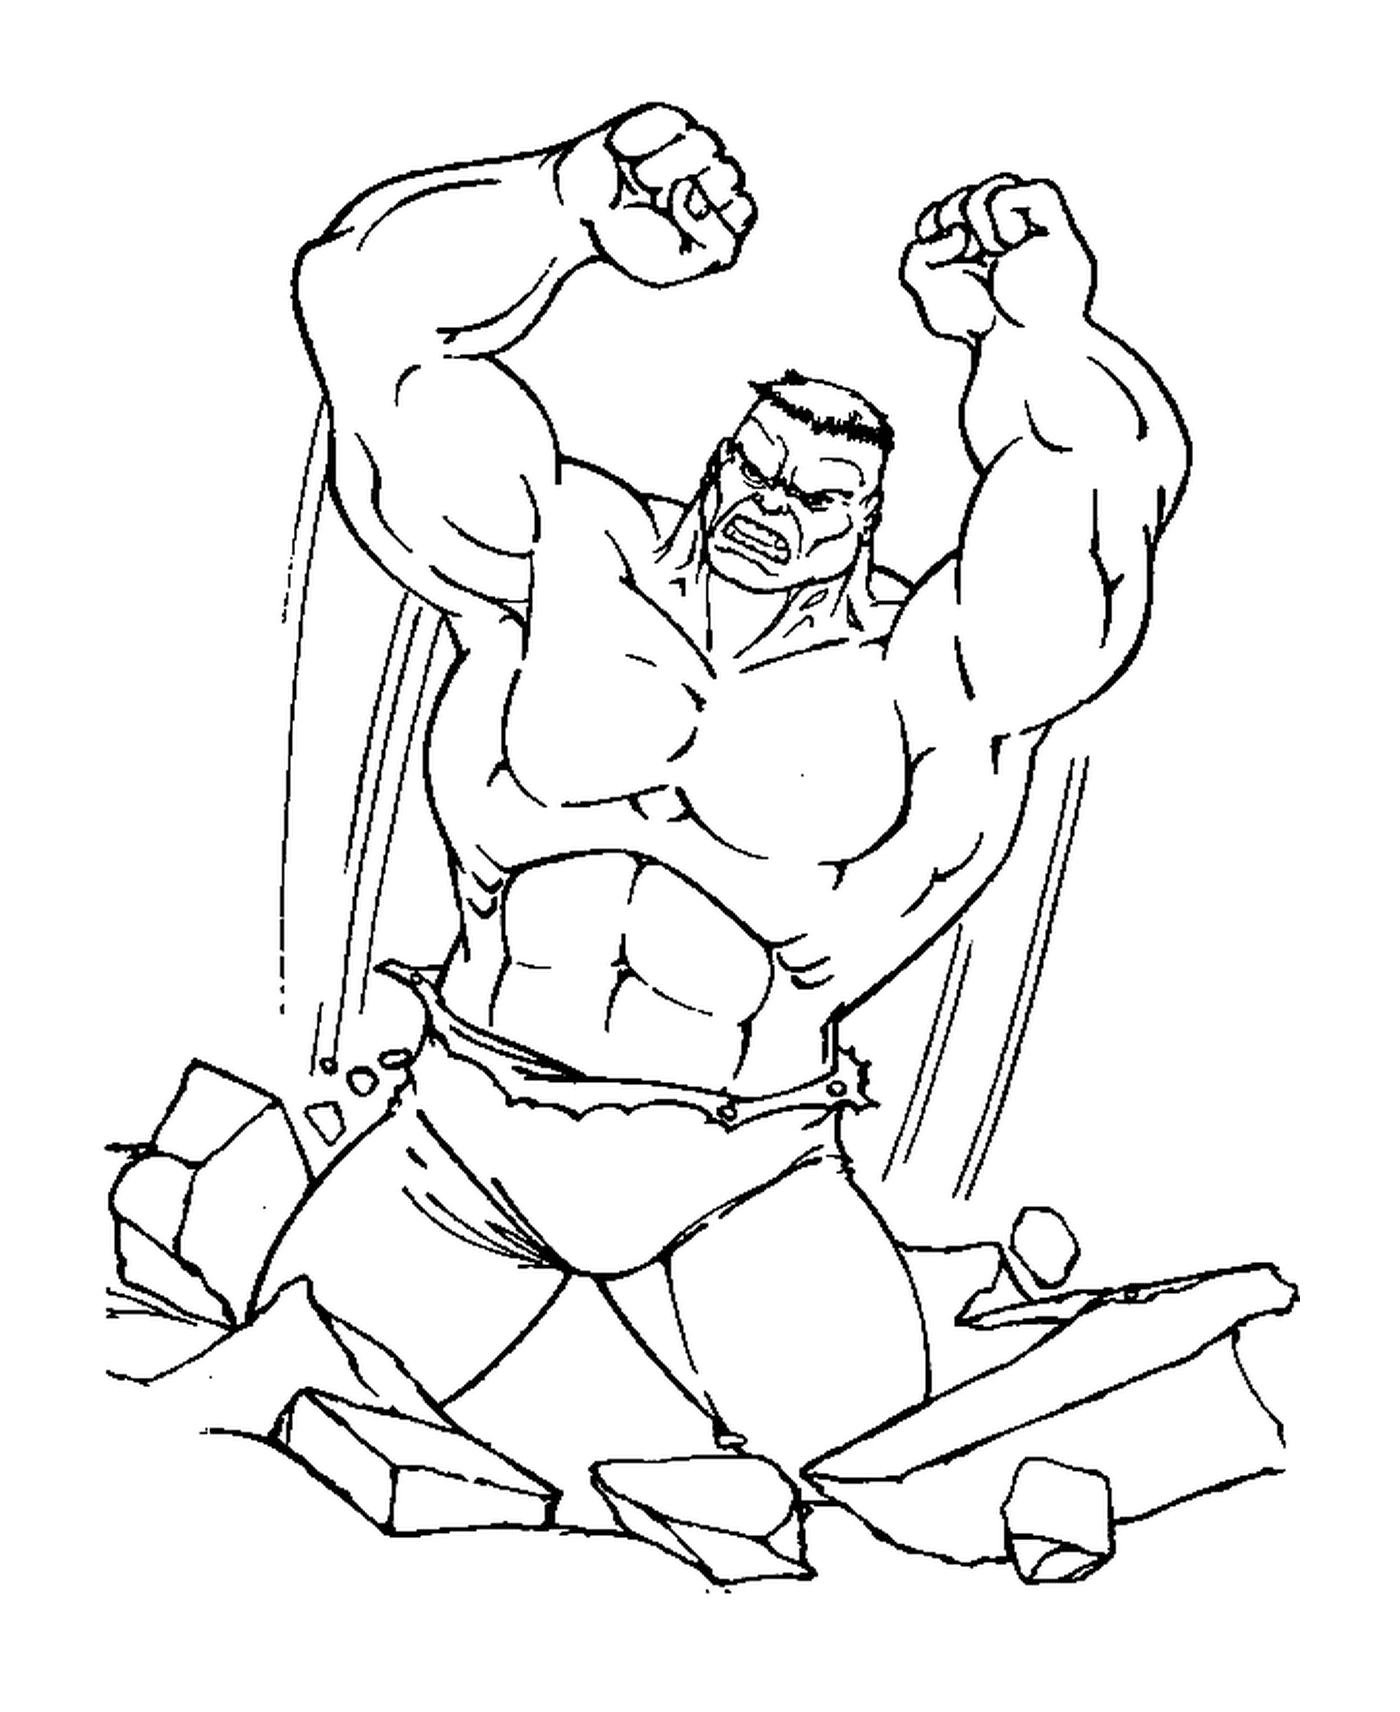  Hulk rompiendo una pared de ladrillo 